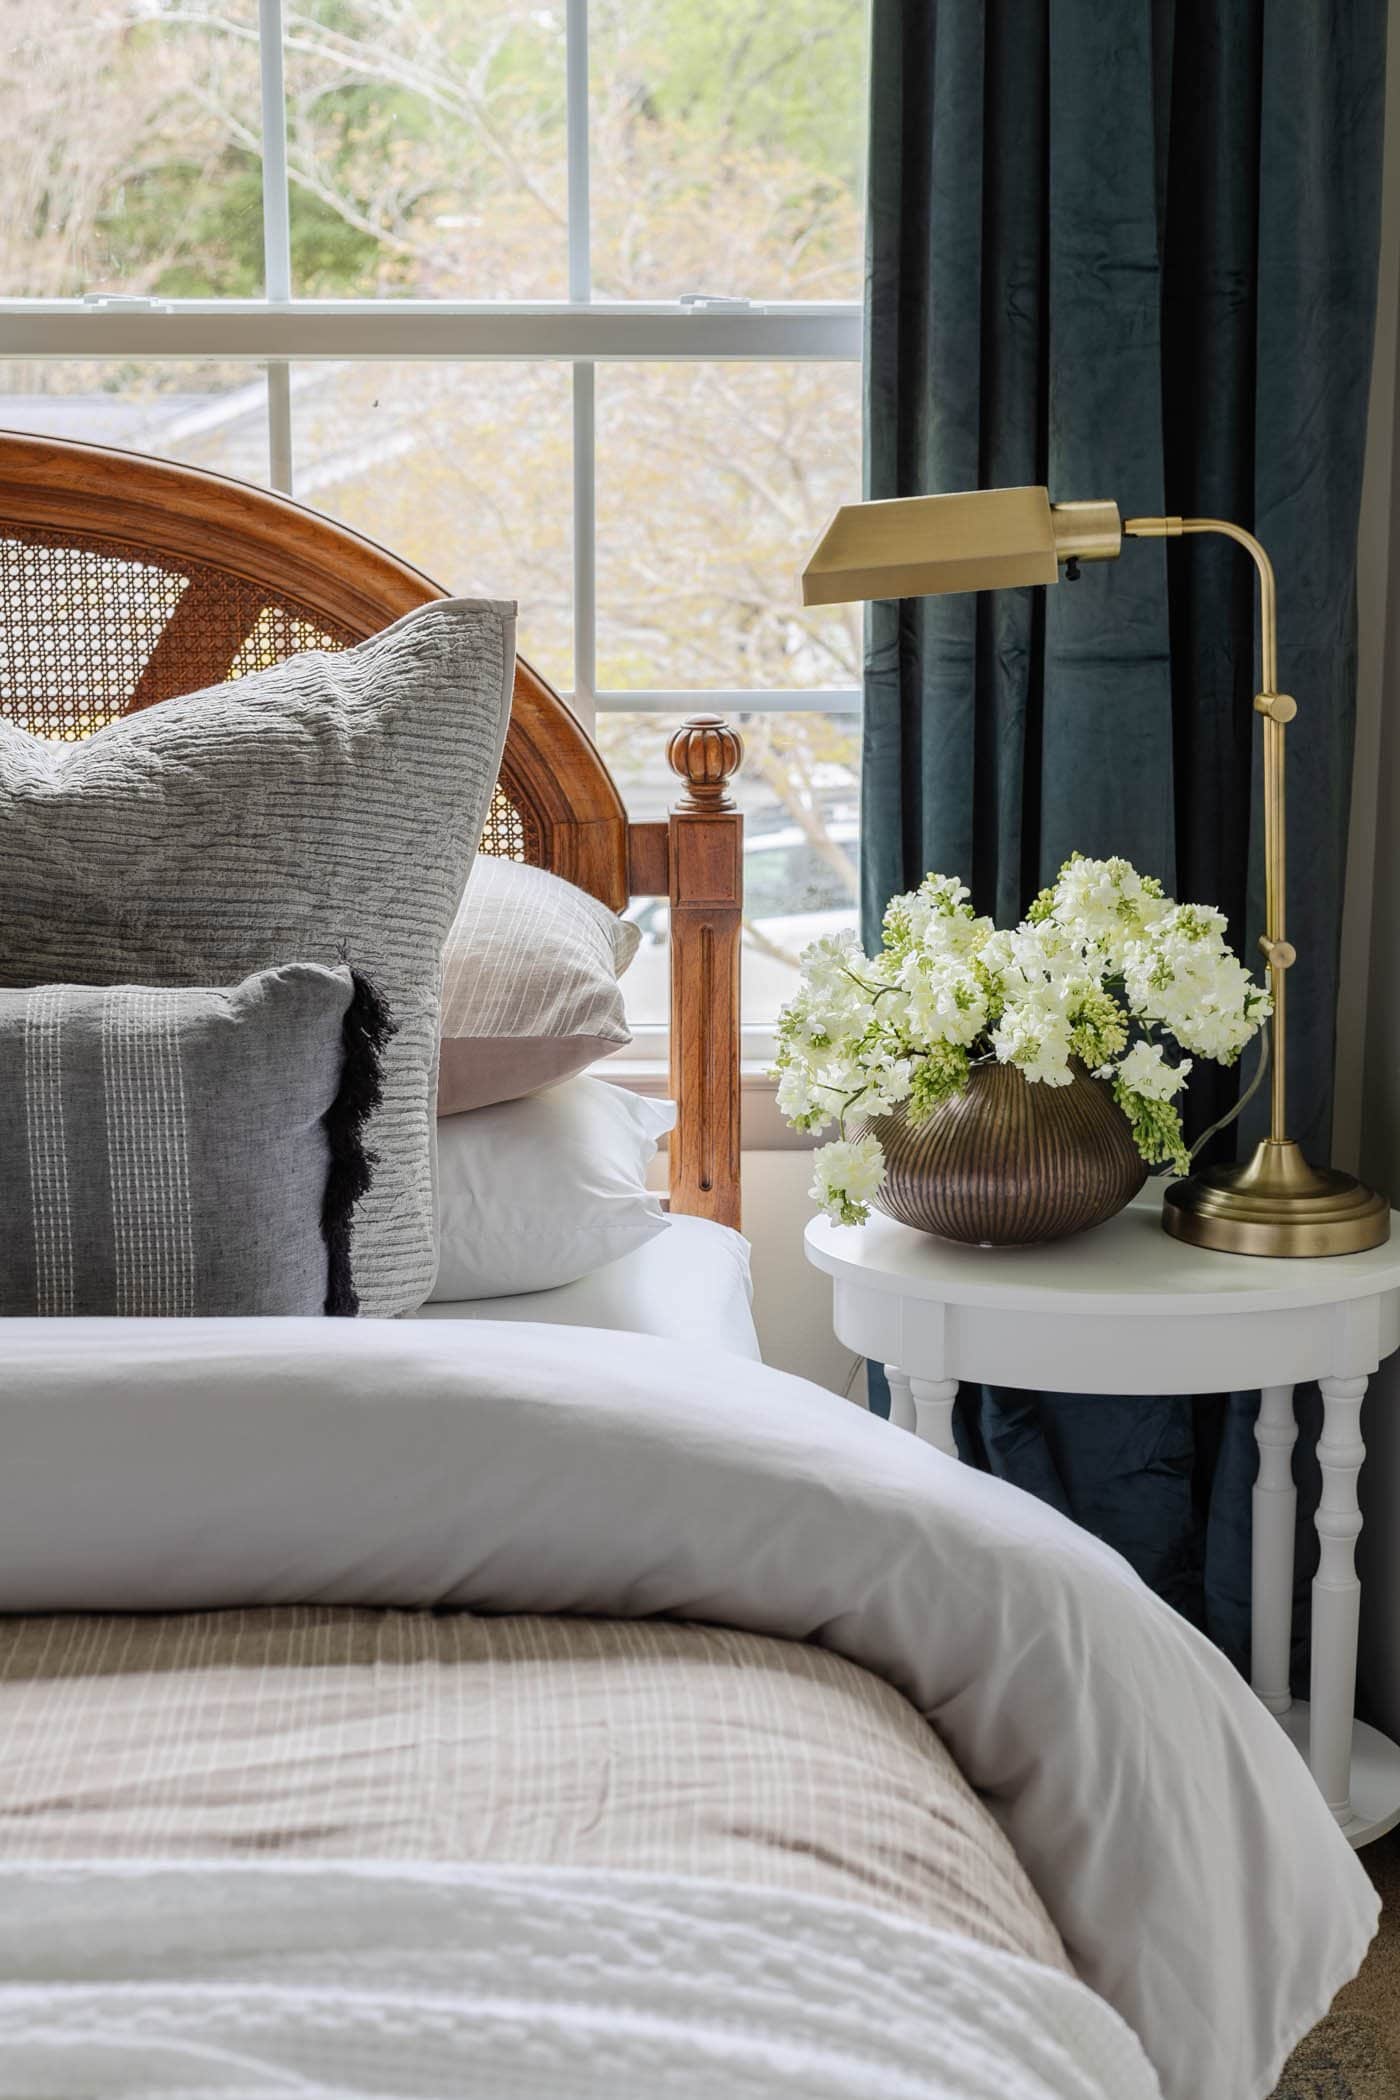 décor de table de chevet avec vase de fleurs et lampe dans une chambre d'amis avec tête de lit en canne